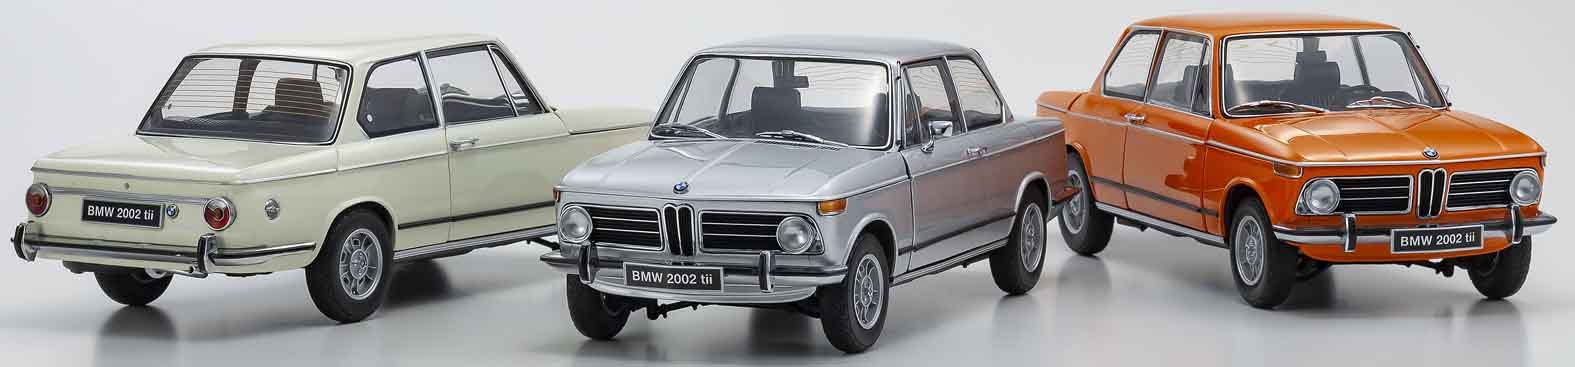 Kyosho BMW 2002 Tii 1/18 White KS08543W